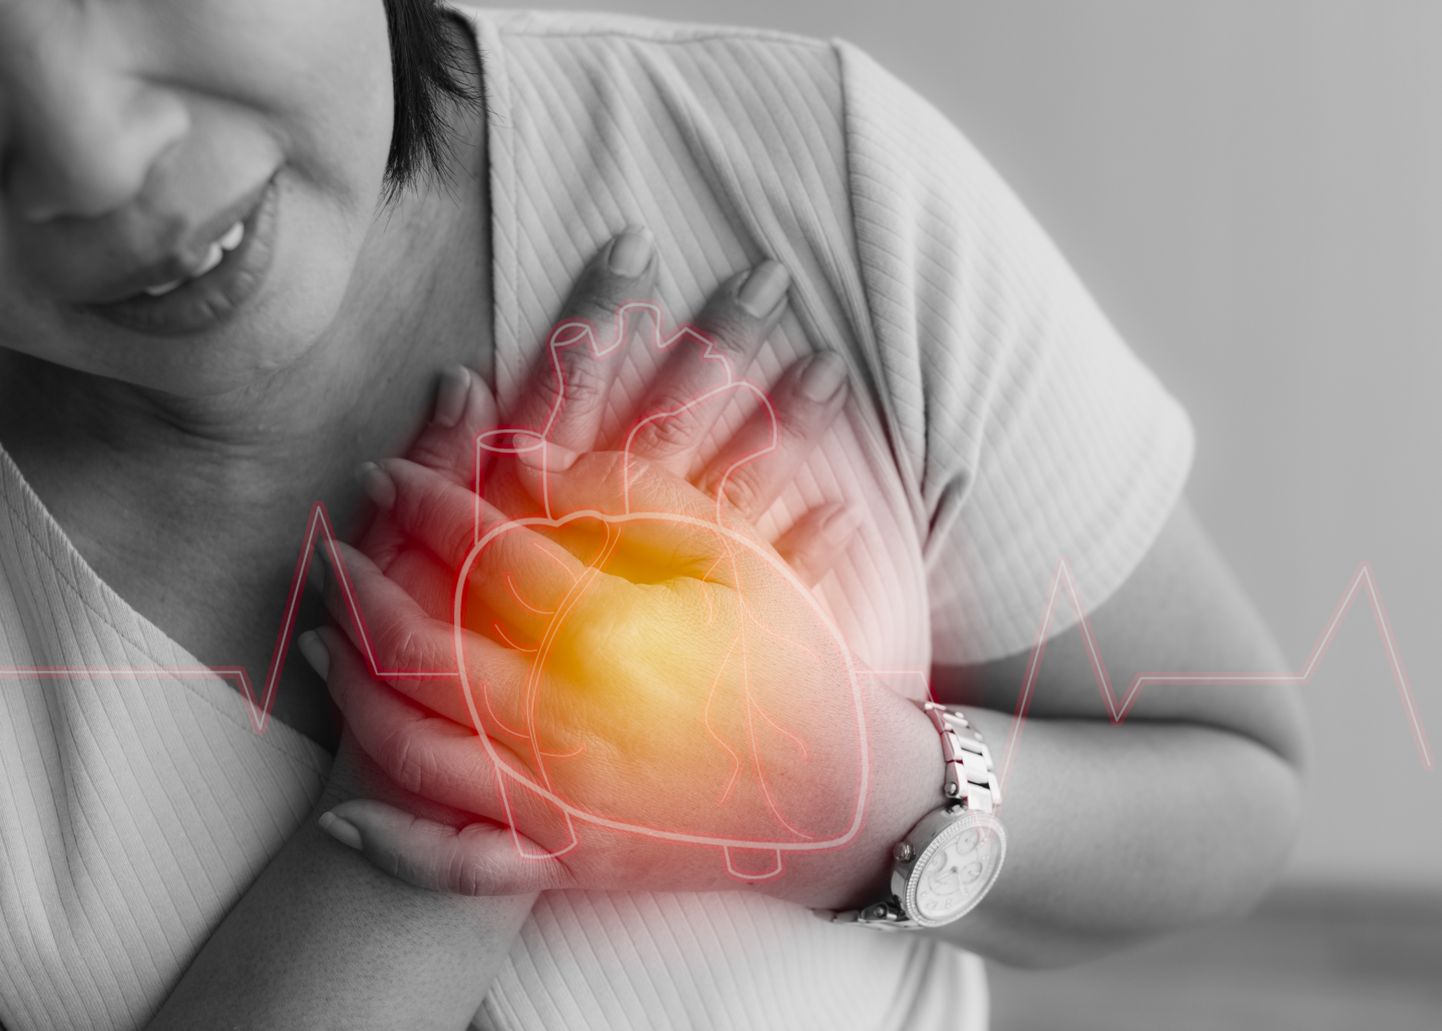 Südameinfarkt on südamelihase pöördumatu kahjustus, mille korral osa südamelihasest muutub elutuks ja hävib.